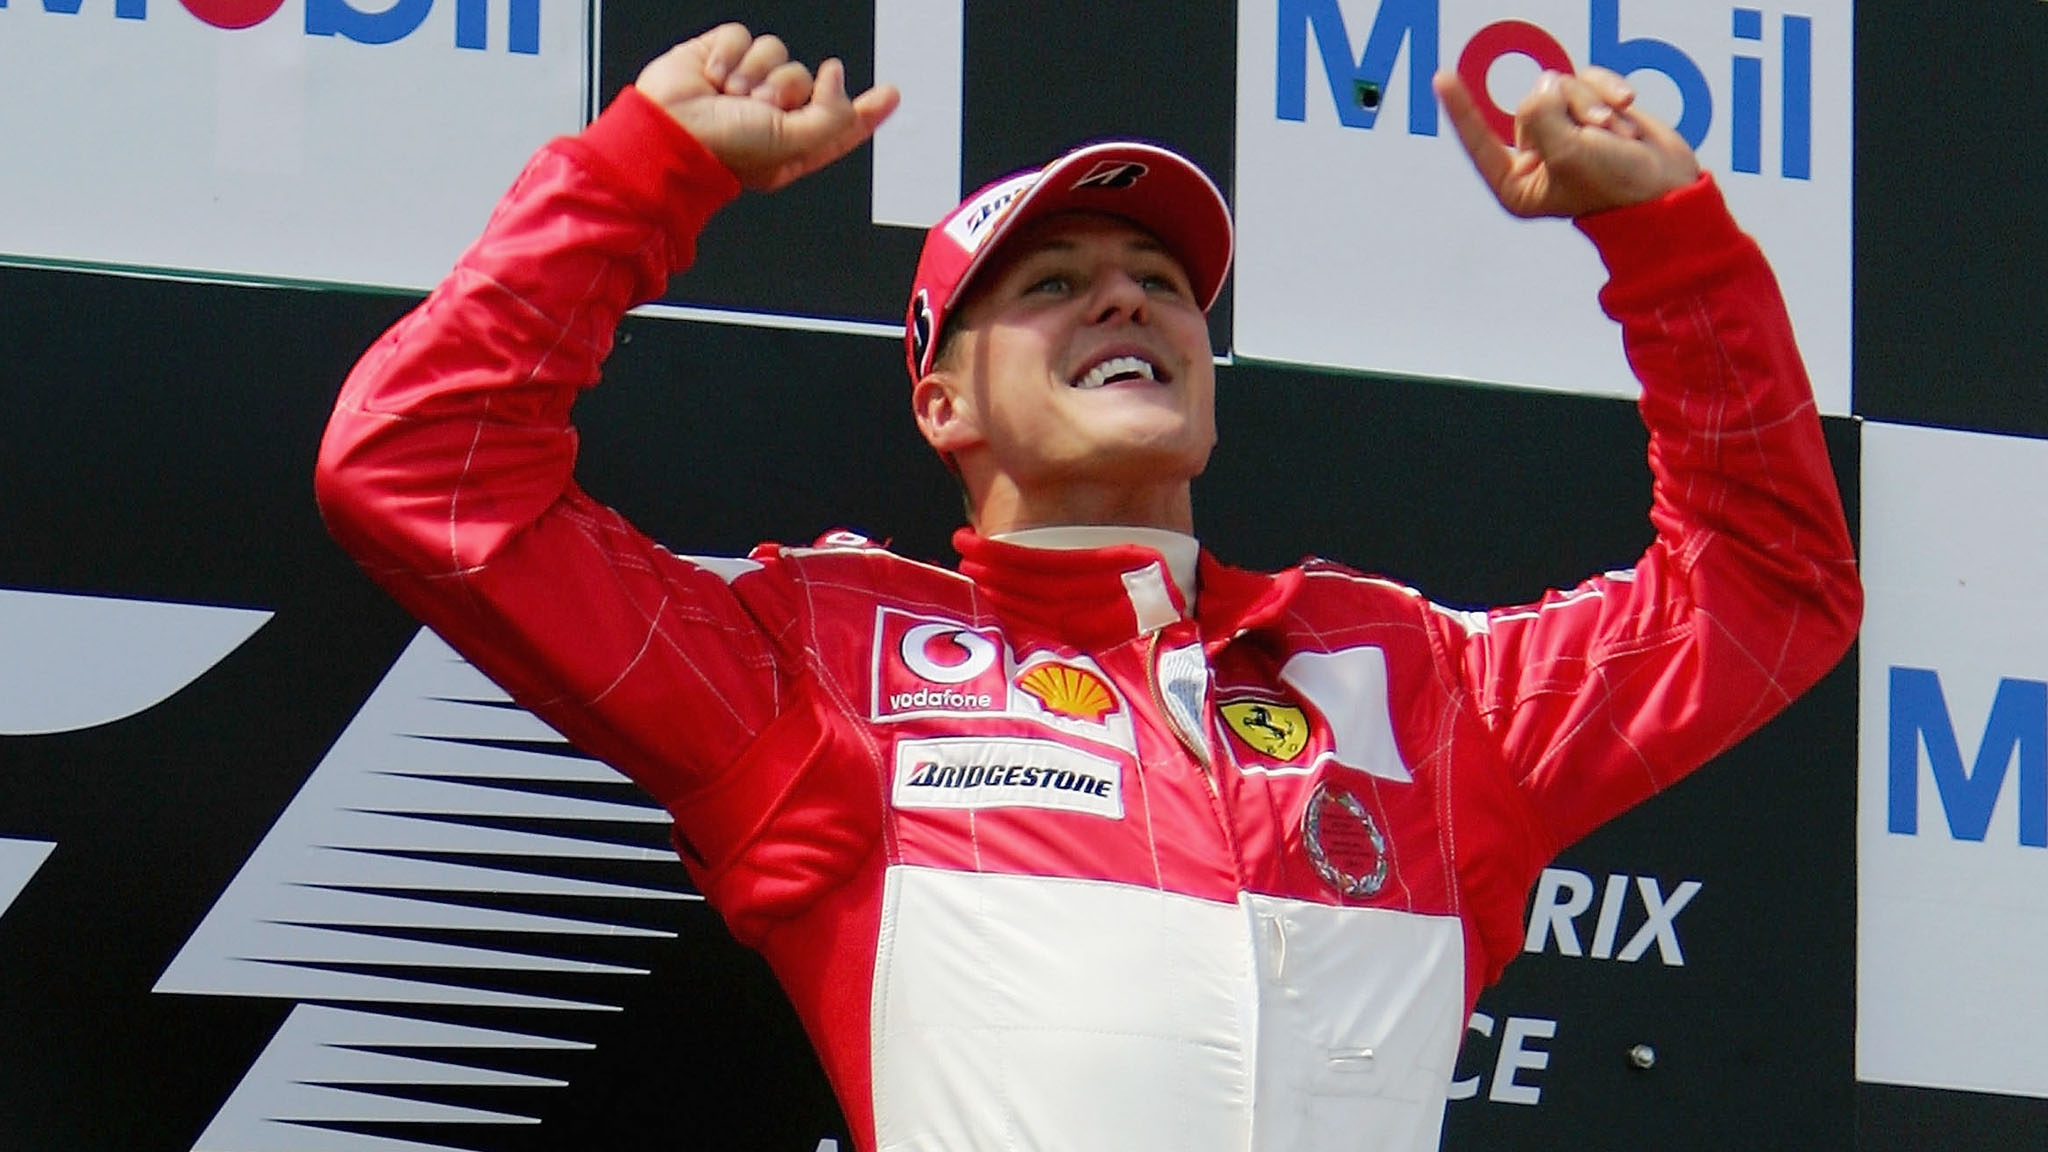 Am 15. September startete auf Netflix die Doku "Schumacher" über die deutsche Formel-1-Legende. 